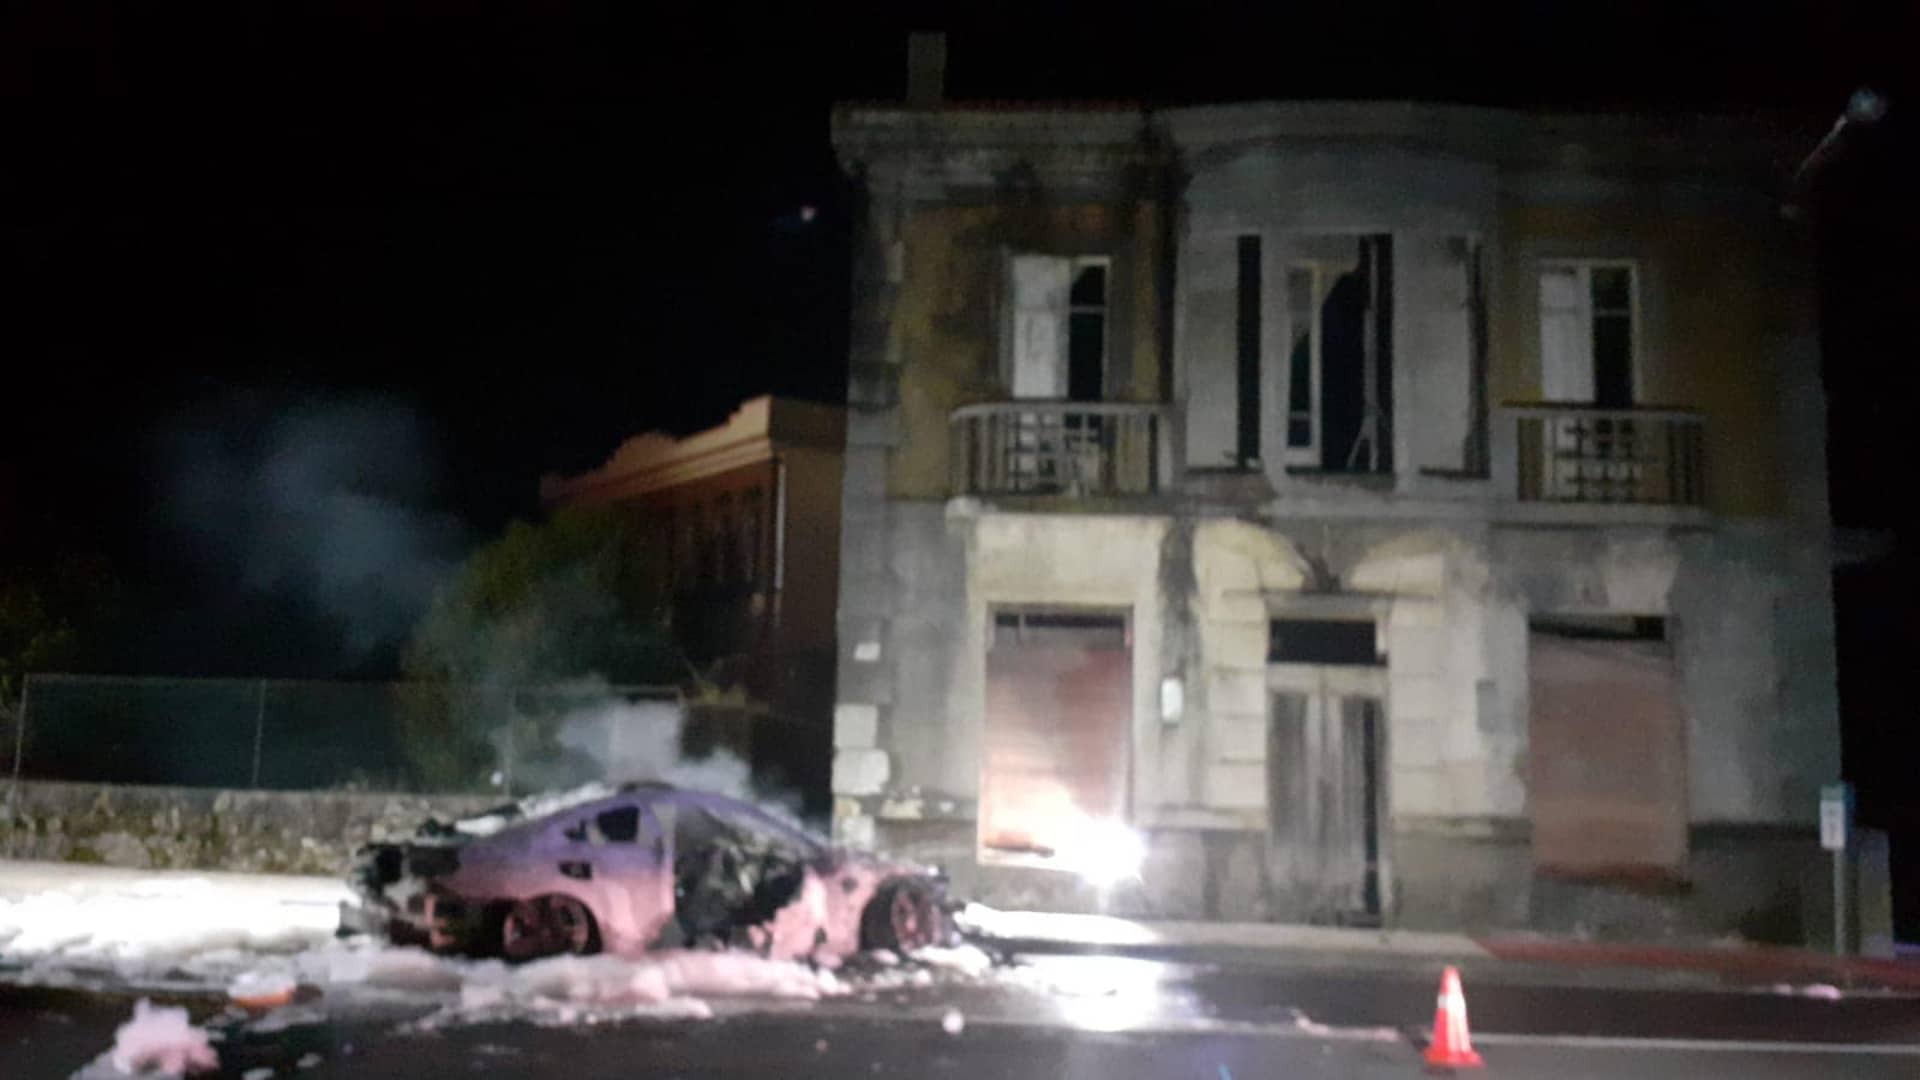 El vehículo que ardió en Cee | ADC BOMBEIROS COSTA DA MORTE